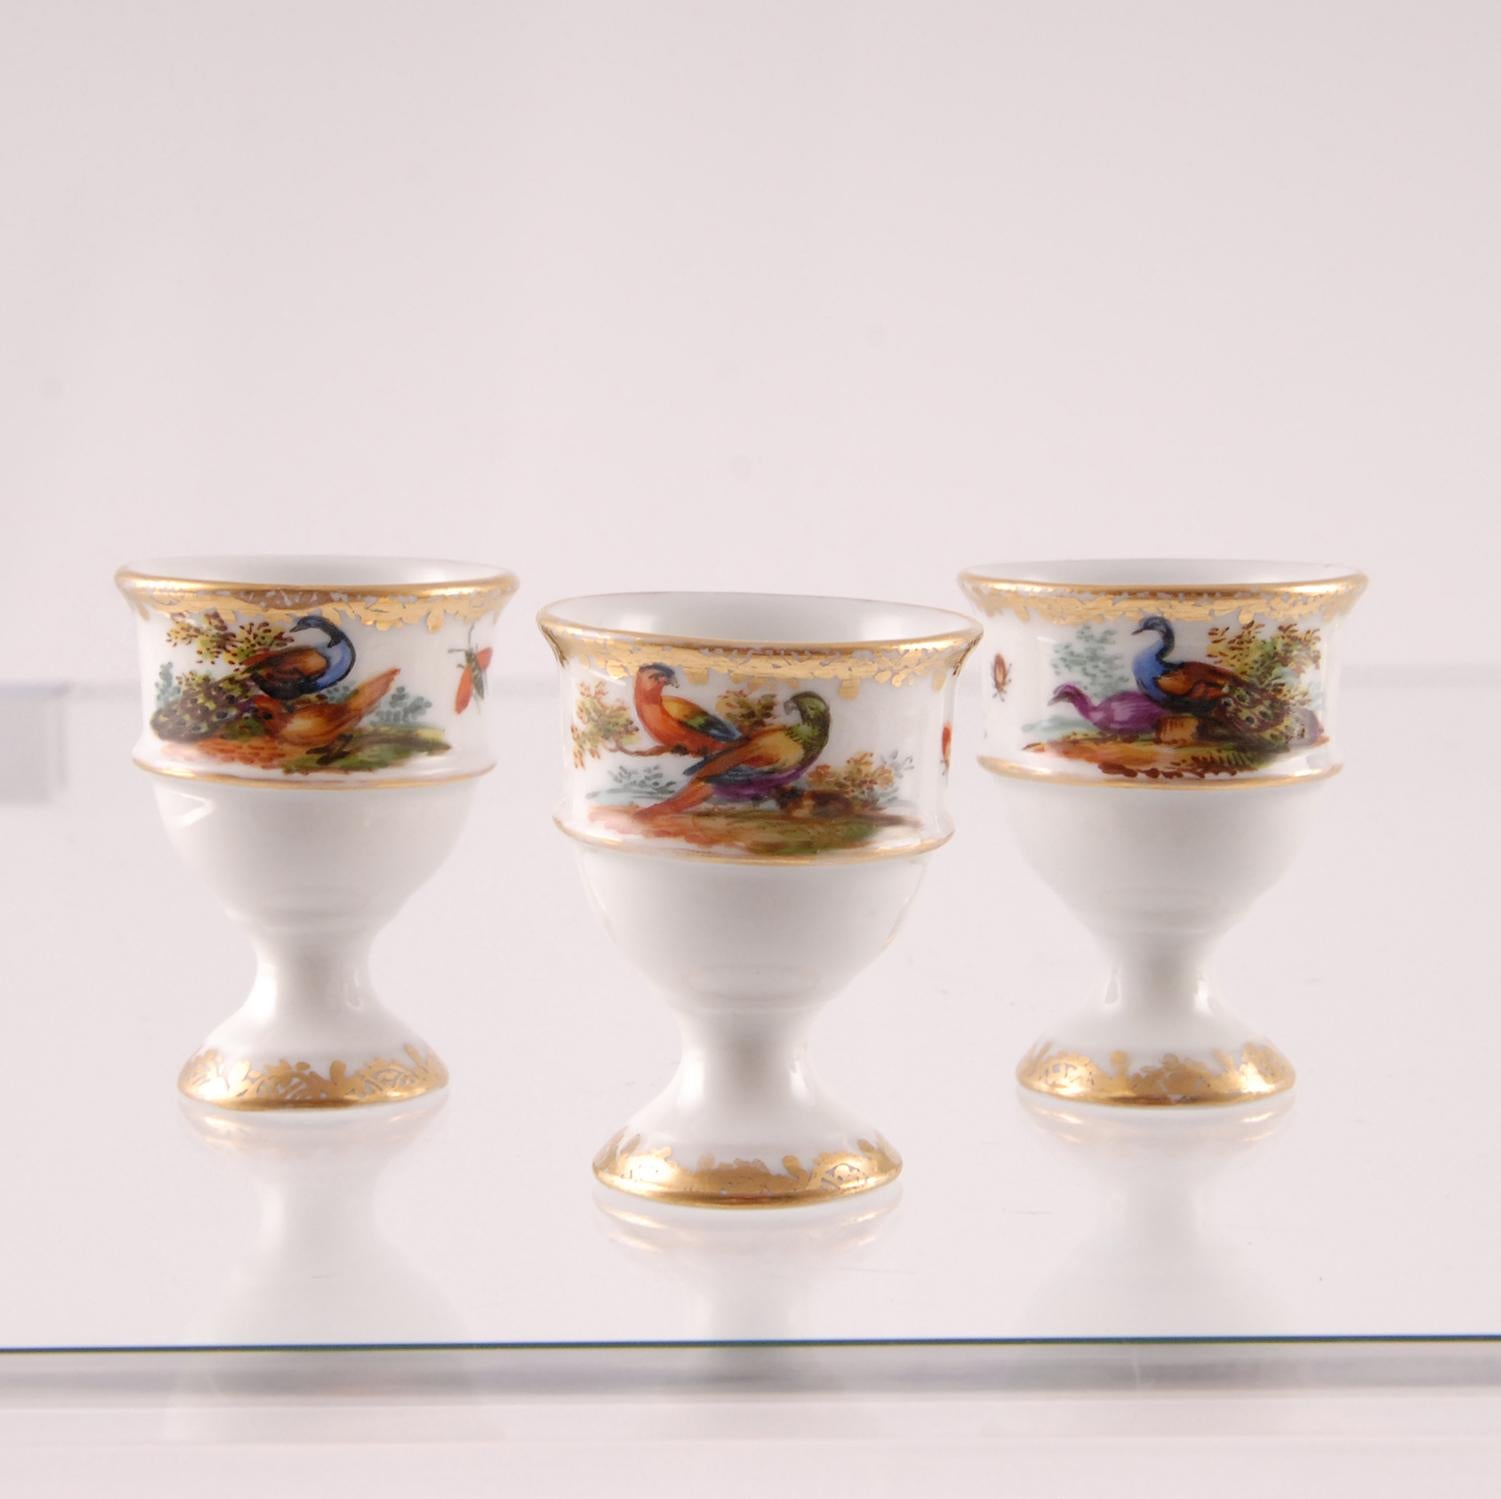 19th Century Porcelain Egg Stand Cruet 18th century Meissen Style Victorian German Handmade